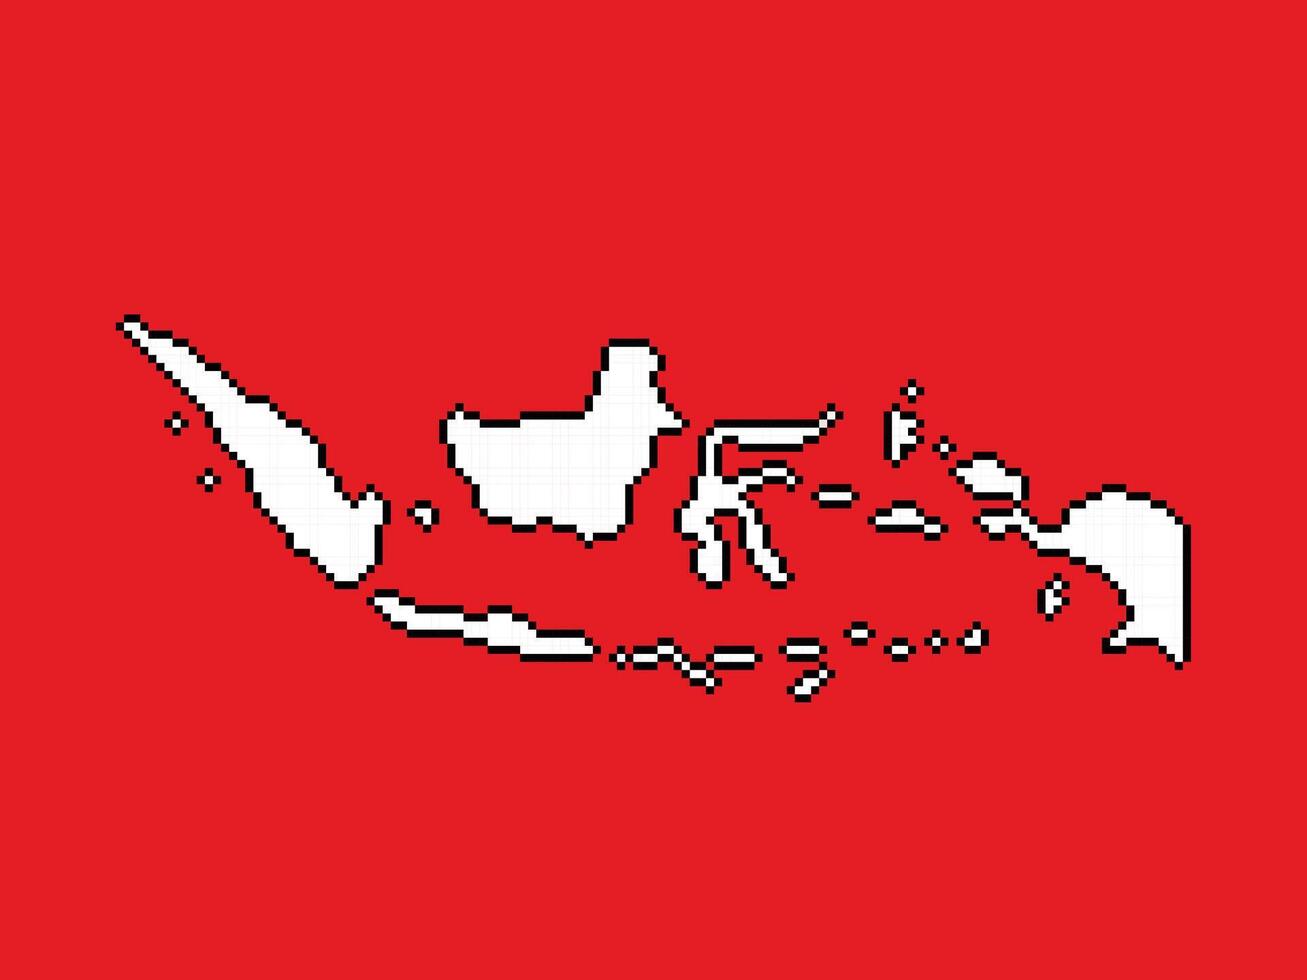 Indonésia ilha país vermelho e branco colori mapa. pixel mordeu retro jogos estilizado vetor ilustração desenhando isolado em horizontal Razão fundo.